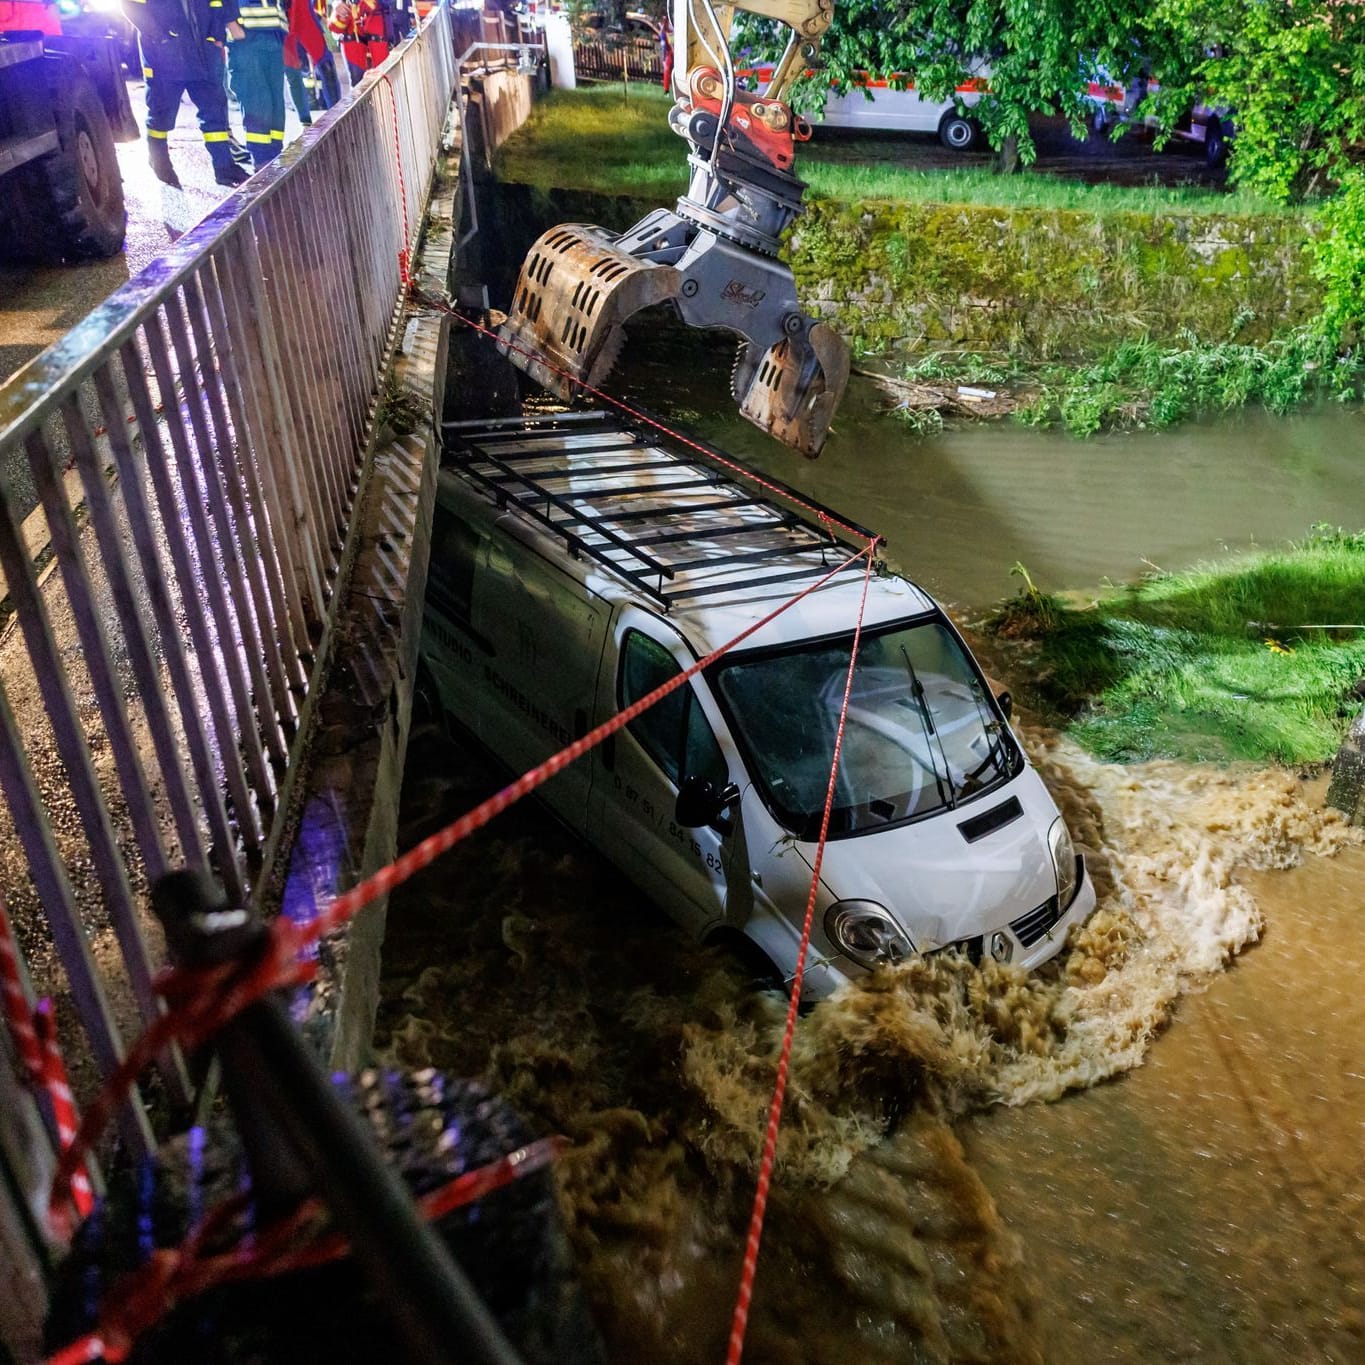 Bayern, Kastl: Feuerwehrleute und ein Bagger arbeiten daran, einen Kastenwagen aus den Überflutungen vor einer Brücke zu bergen.